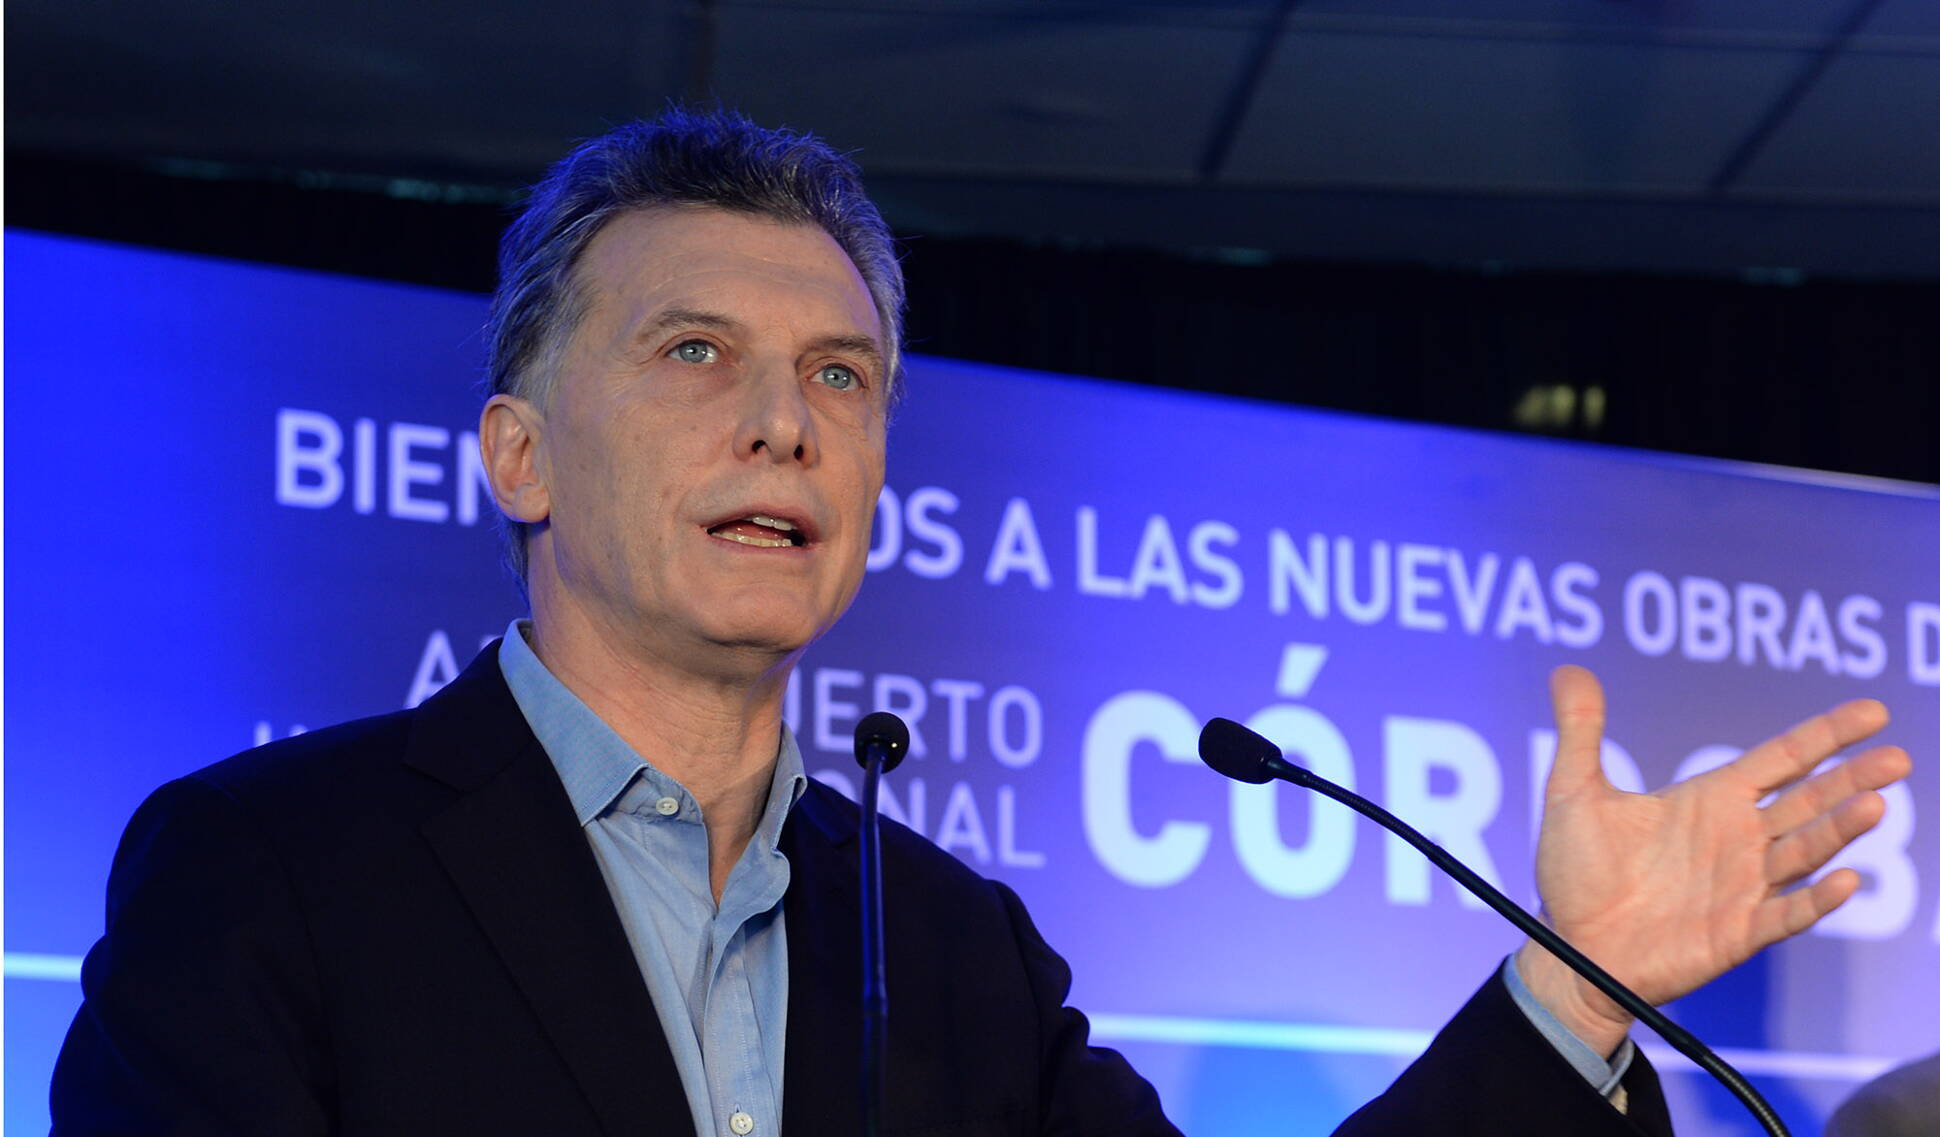 El presidente Macri inauguró las obras de remodelación del Aeropuerto Internacional de Córdoba